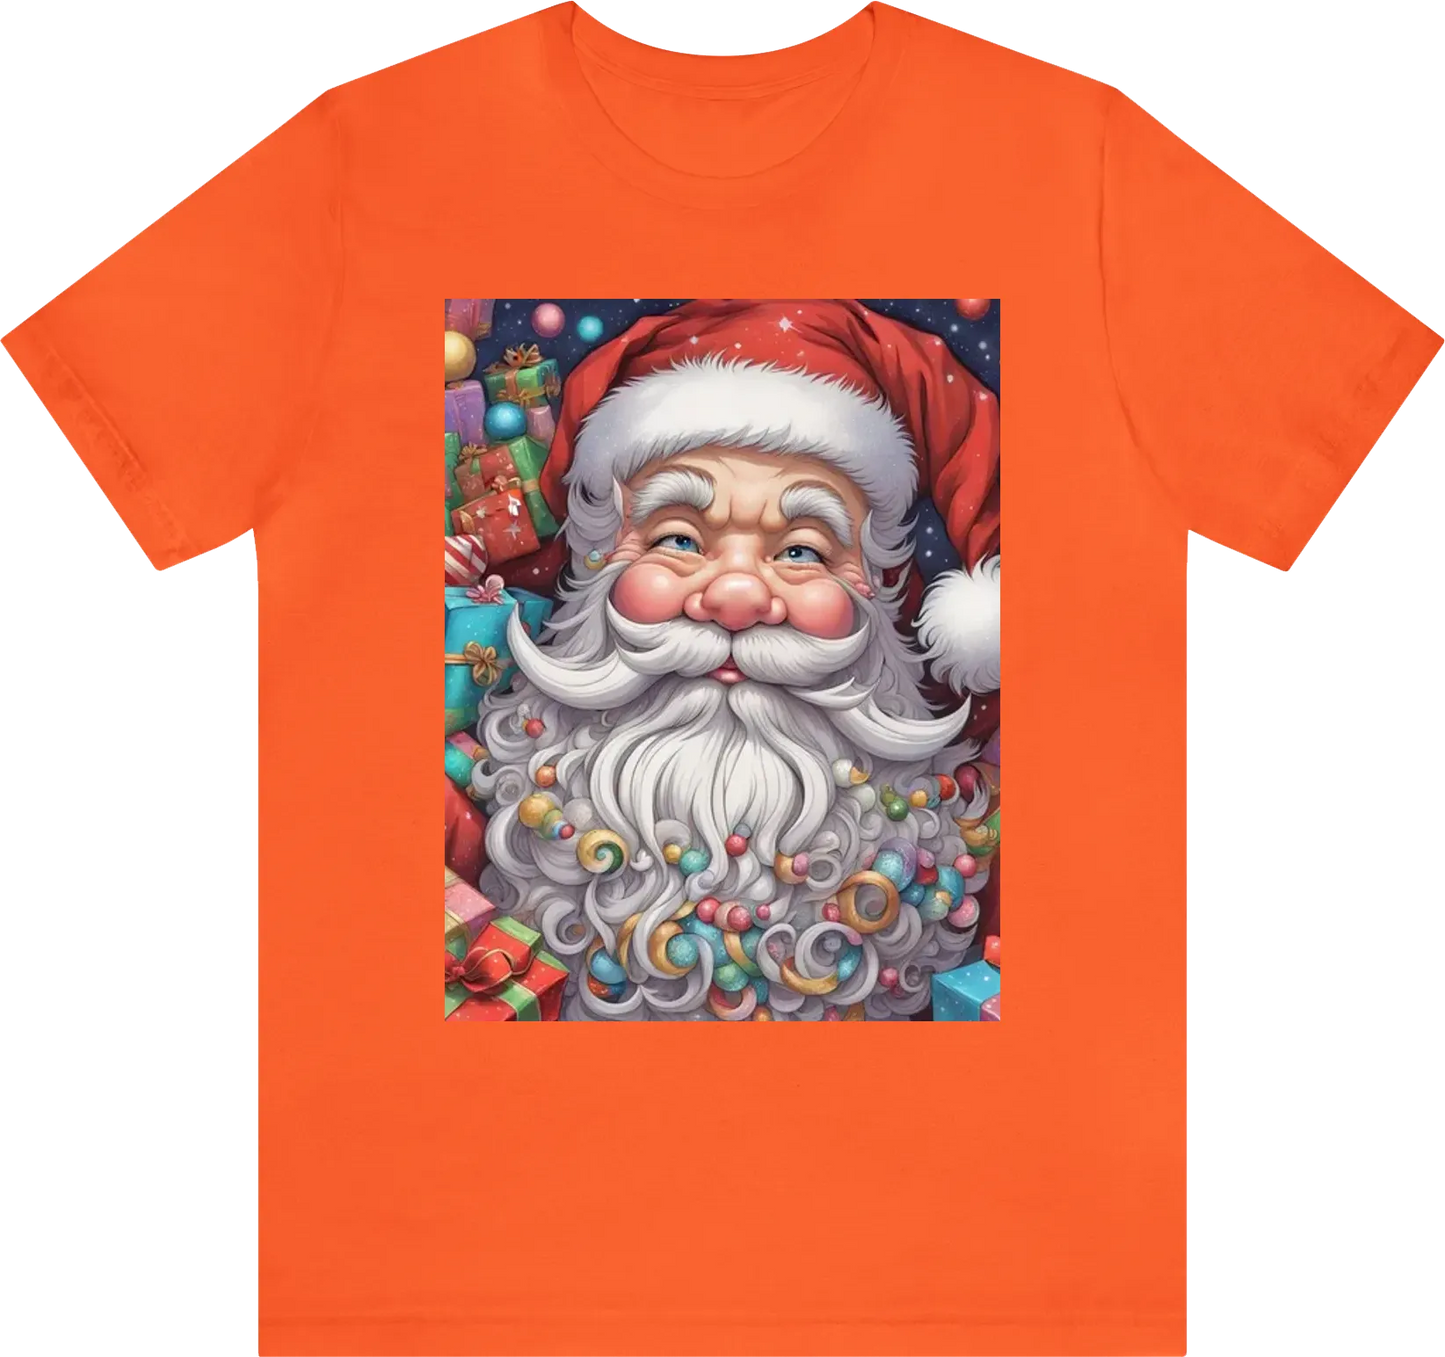 Santa Claus with gift kawaii style